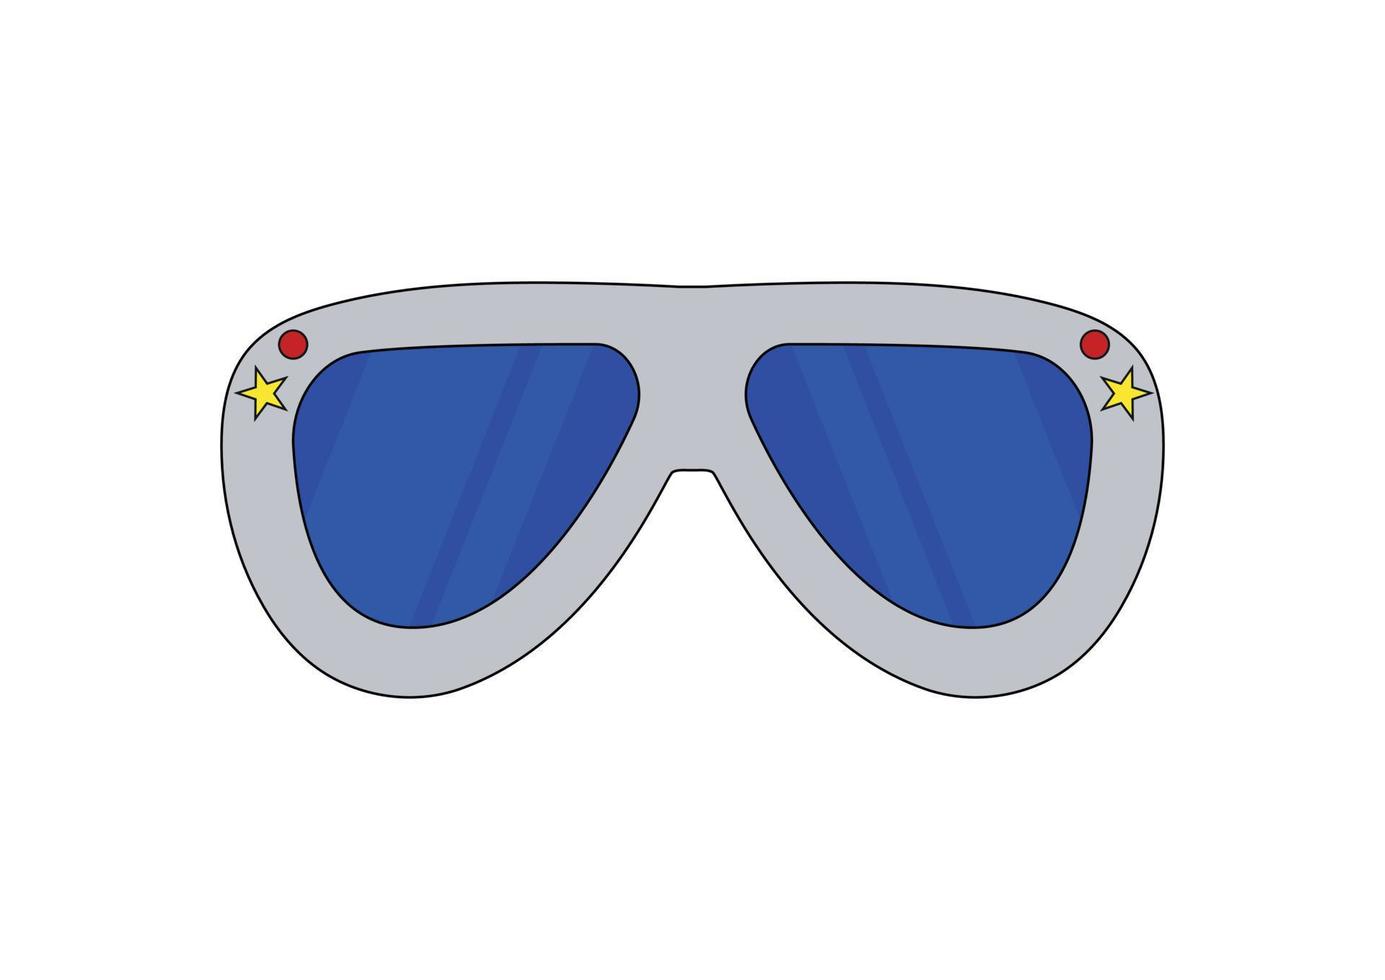 rock glasögon solglasögon clipart vecor illustration vektor